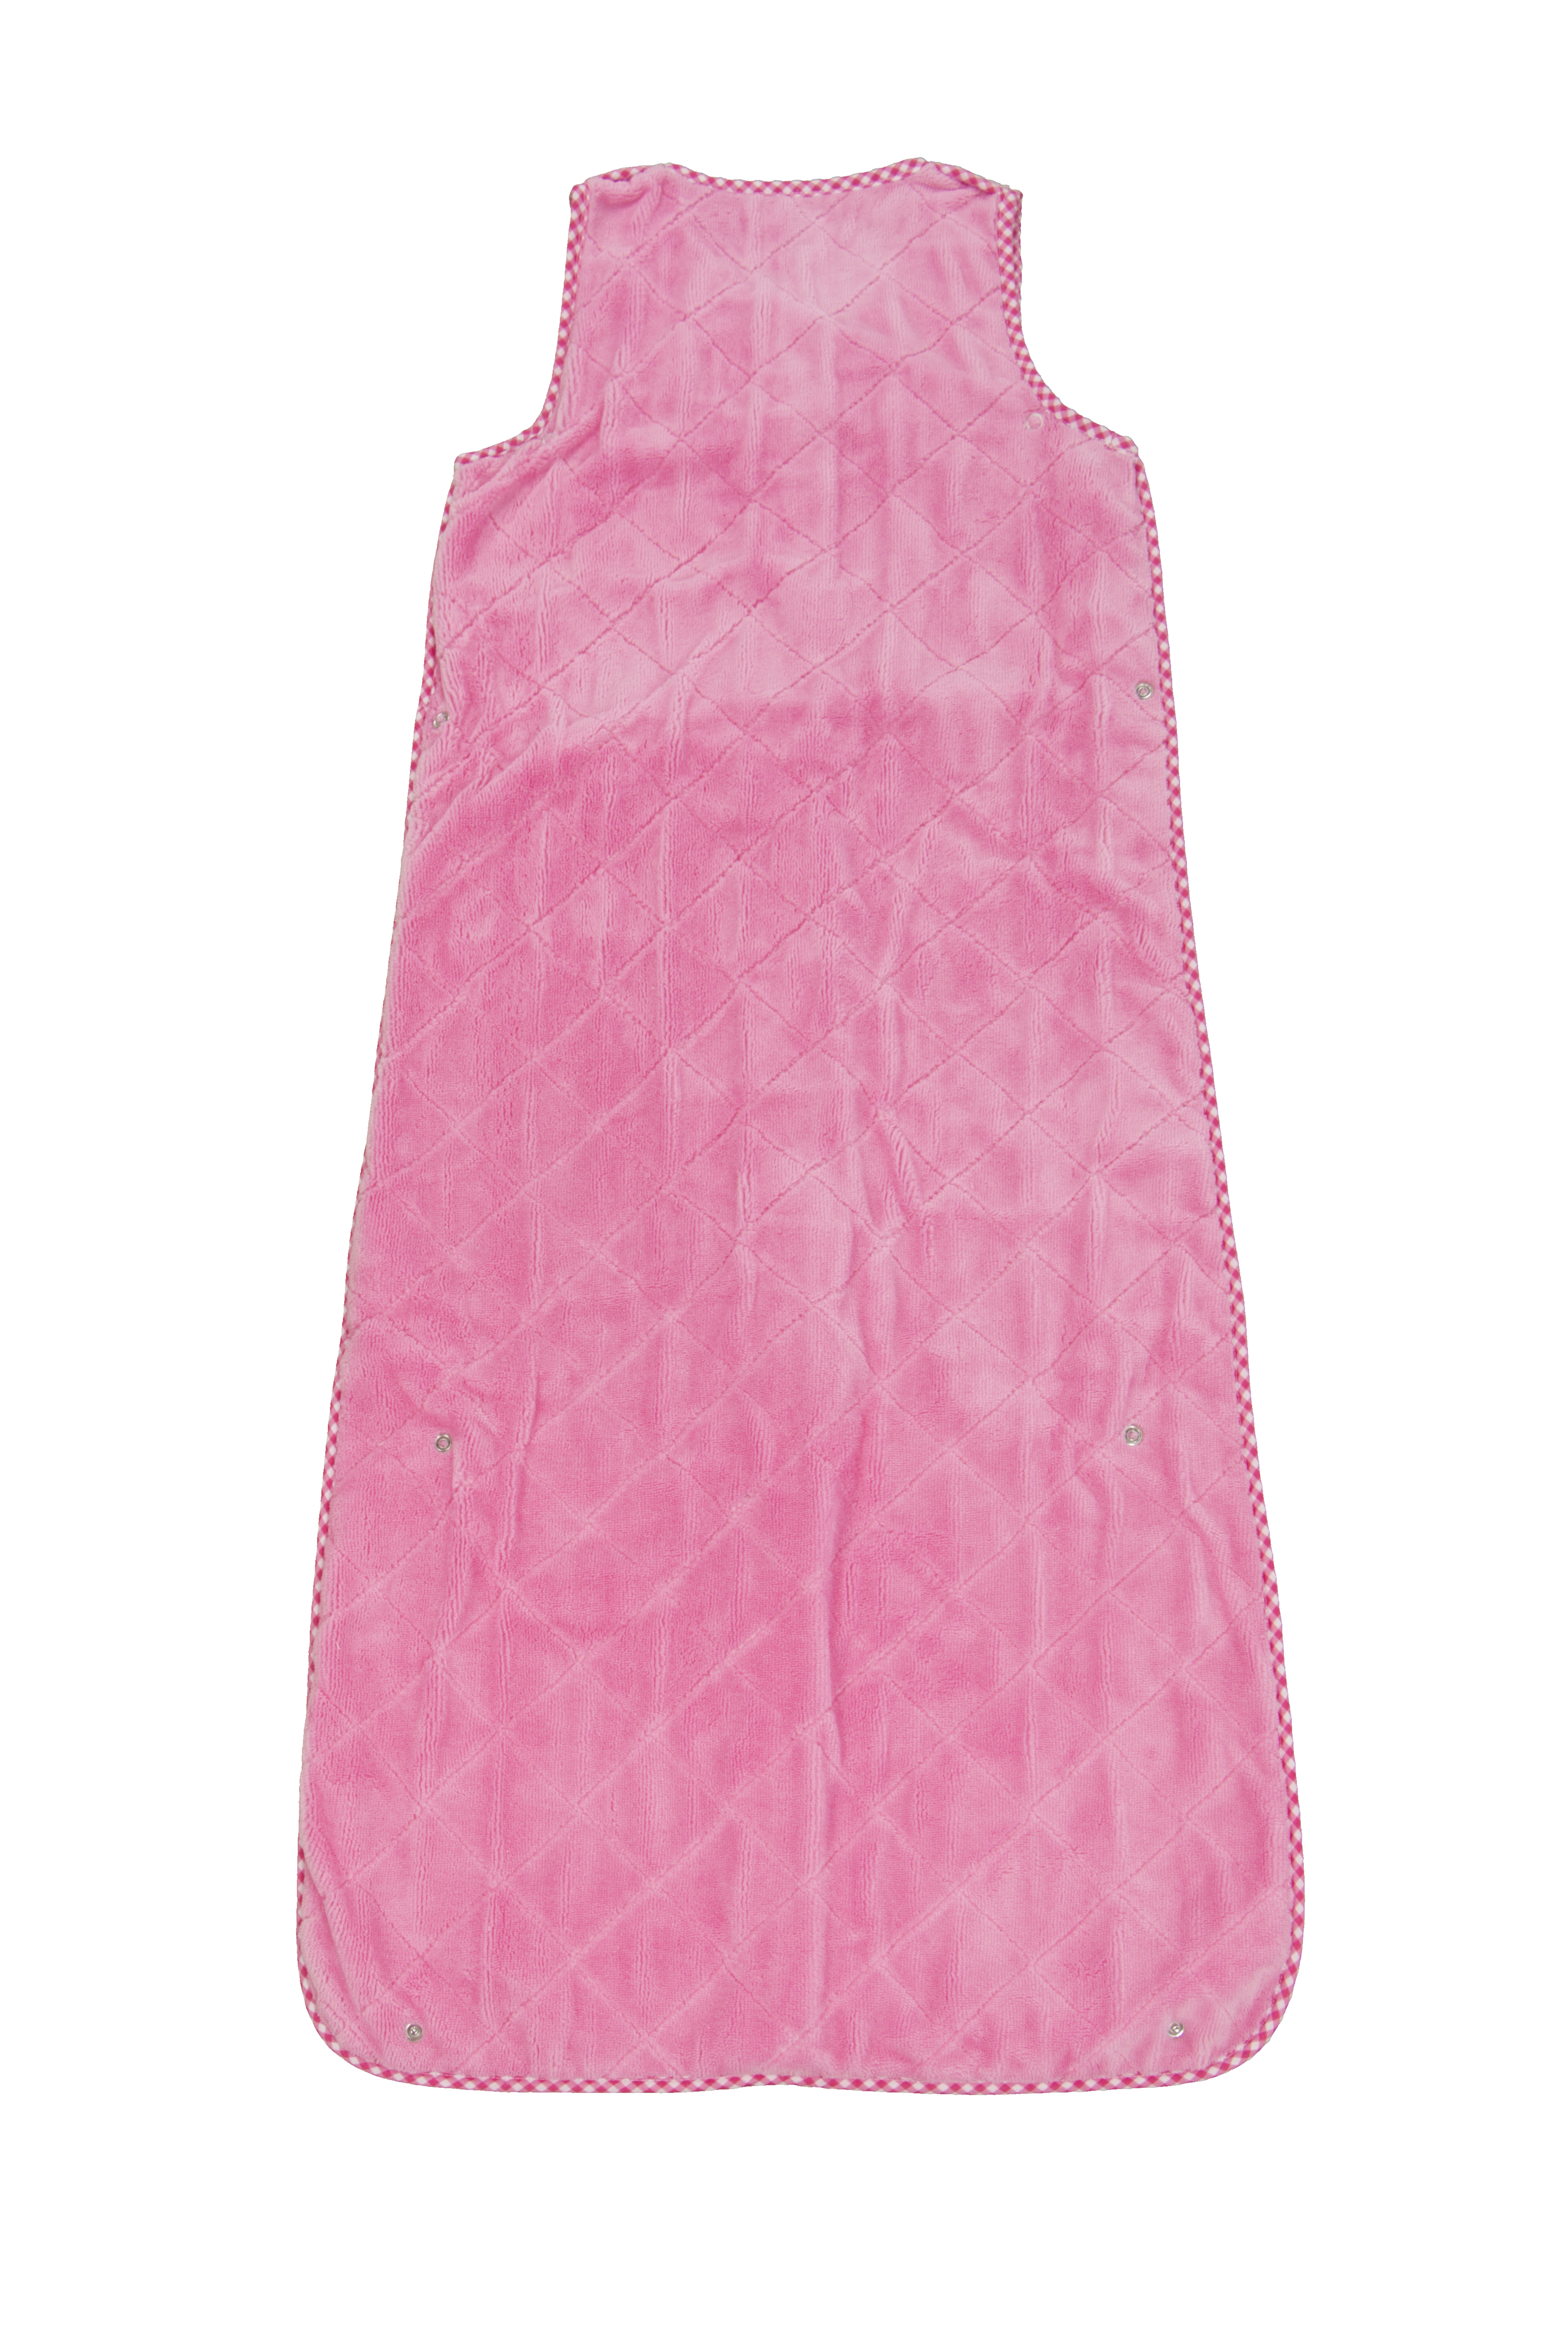 Slaapzakj Girl uni  roze, 50x70-90-110 cm